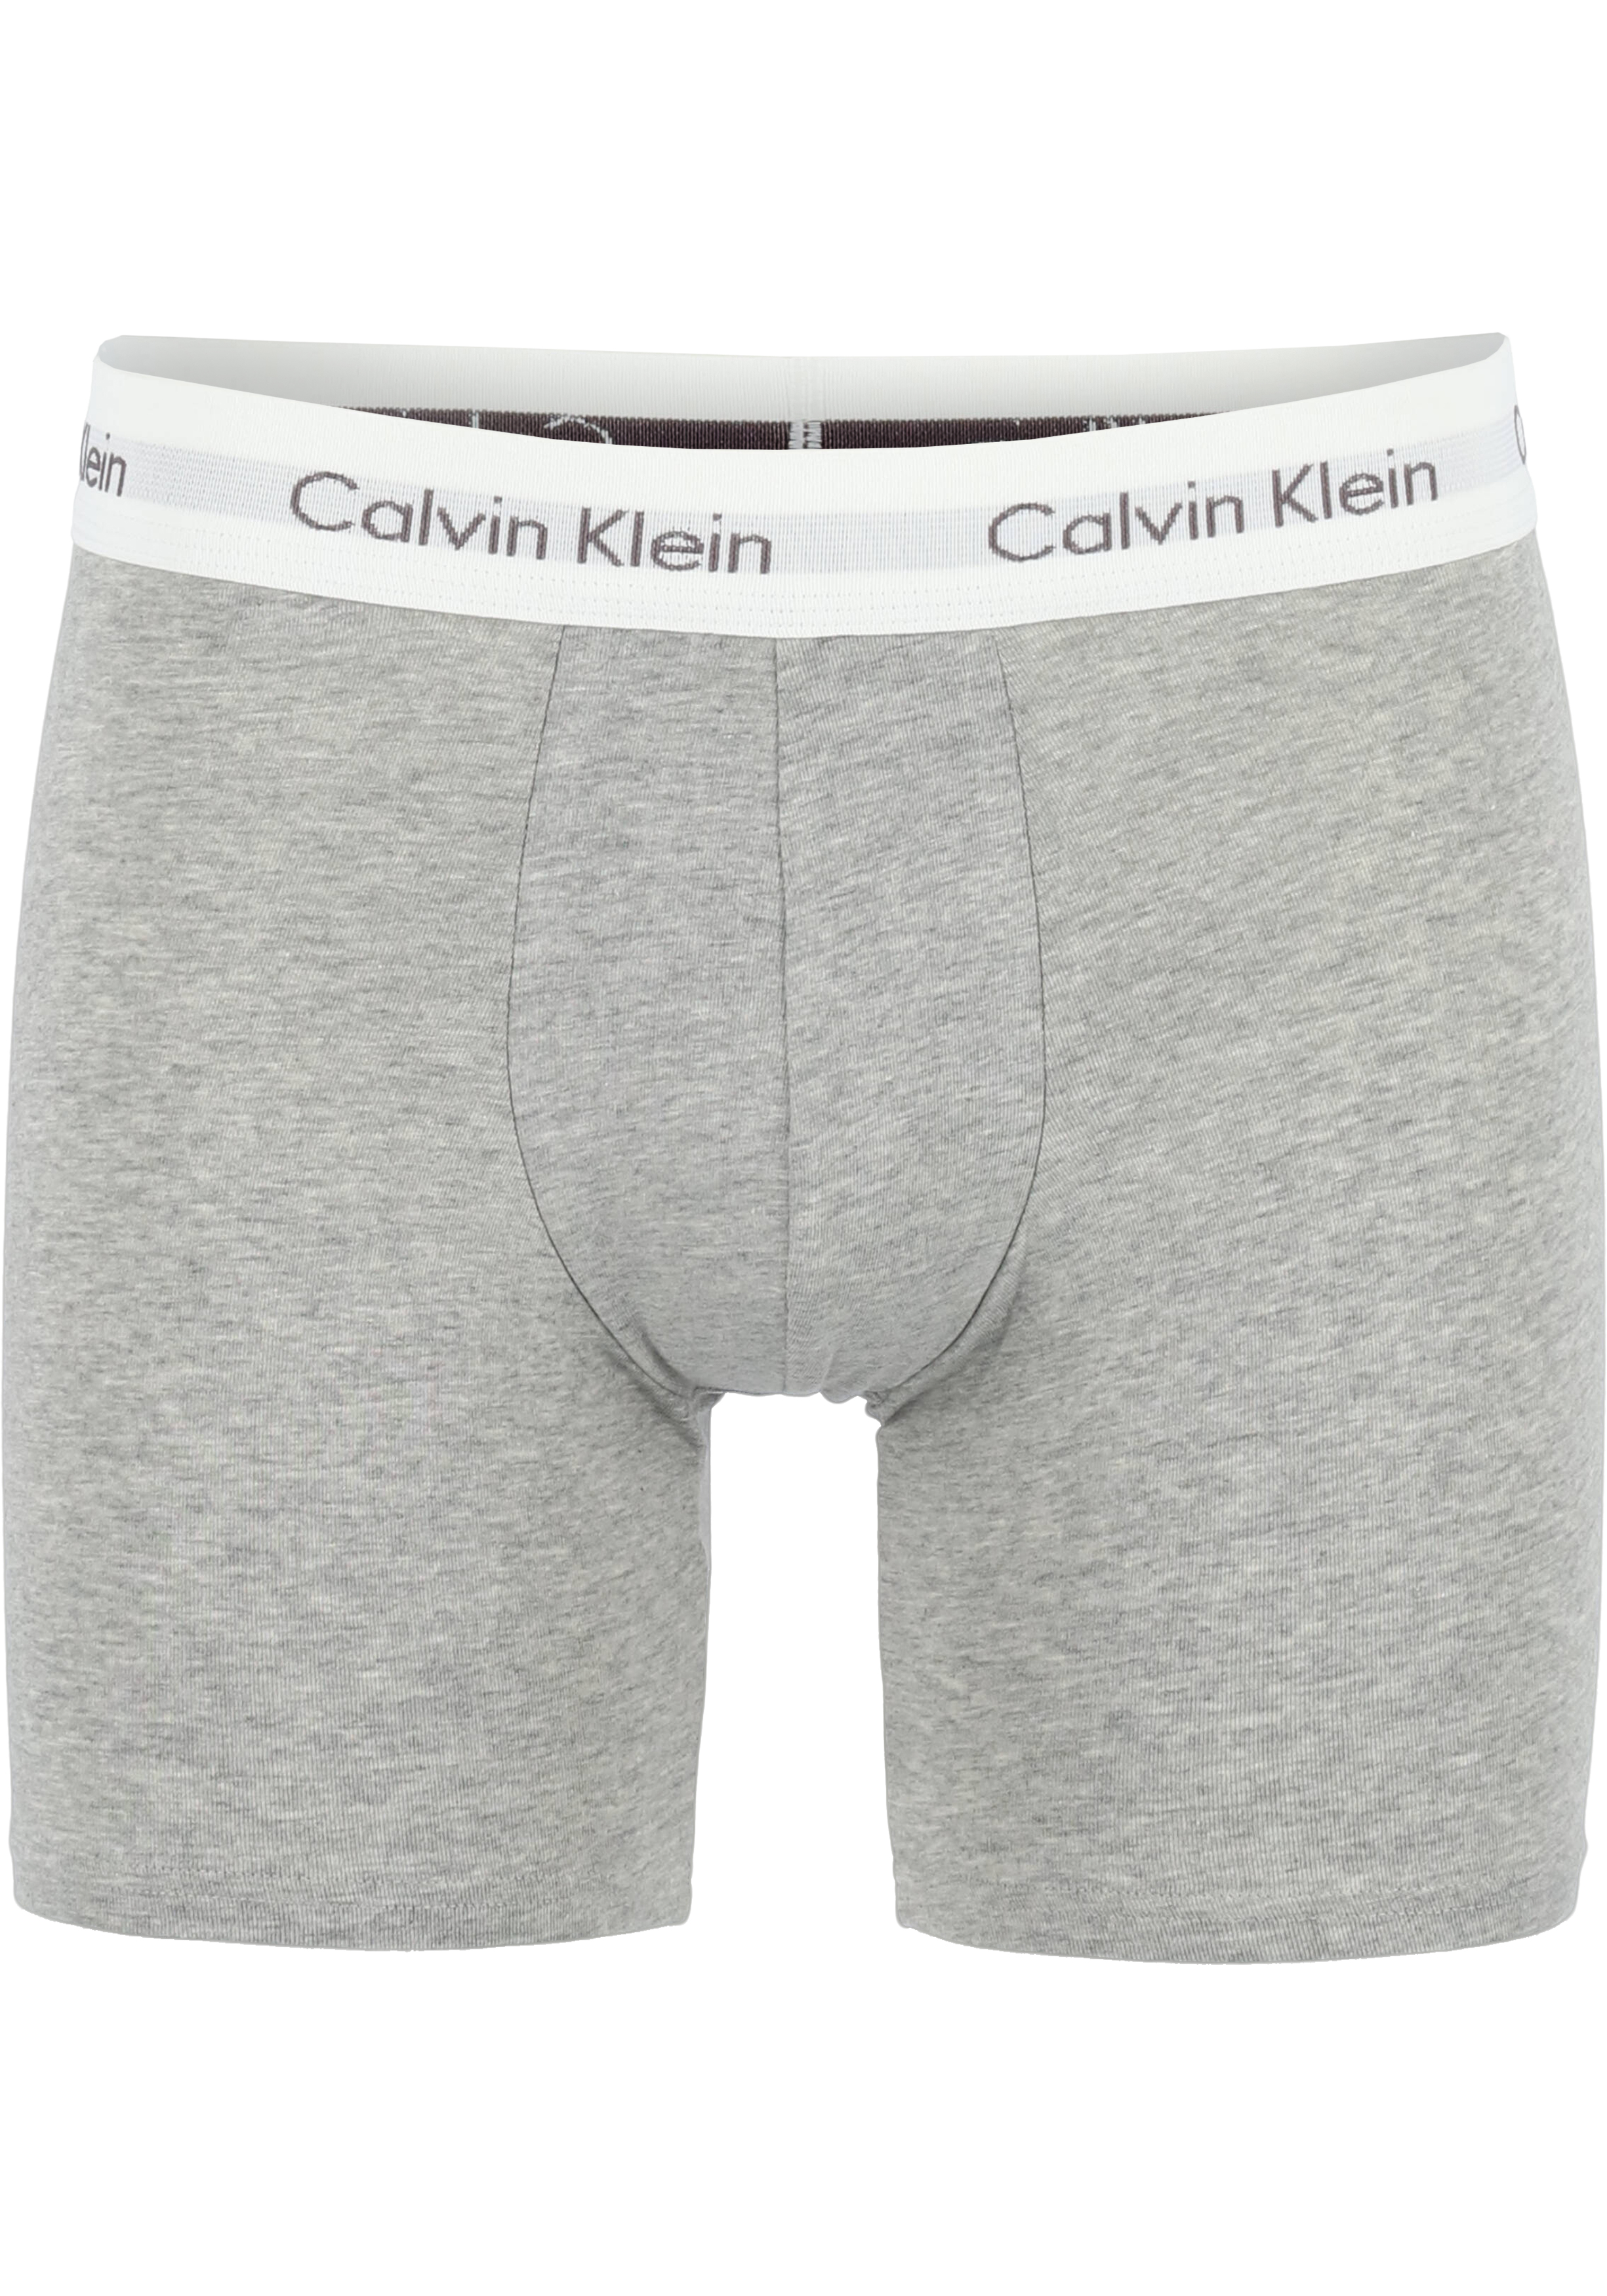 advies mesh kralen Calvin Klein Cotton Stretch boxer brief (3-pack), heren boxers extra... -  Shop de nieuwste voorjaarsmode